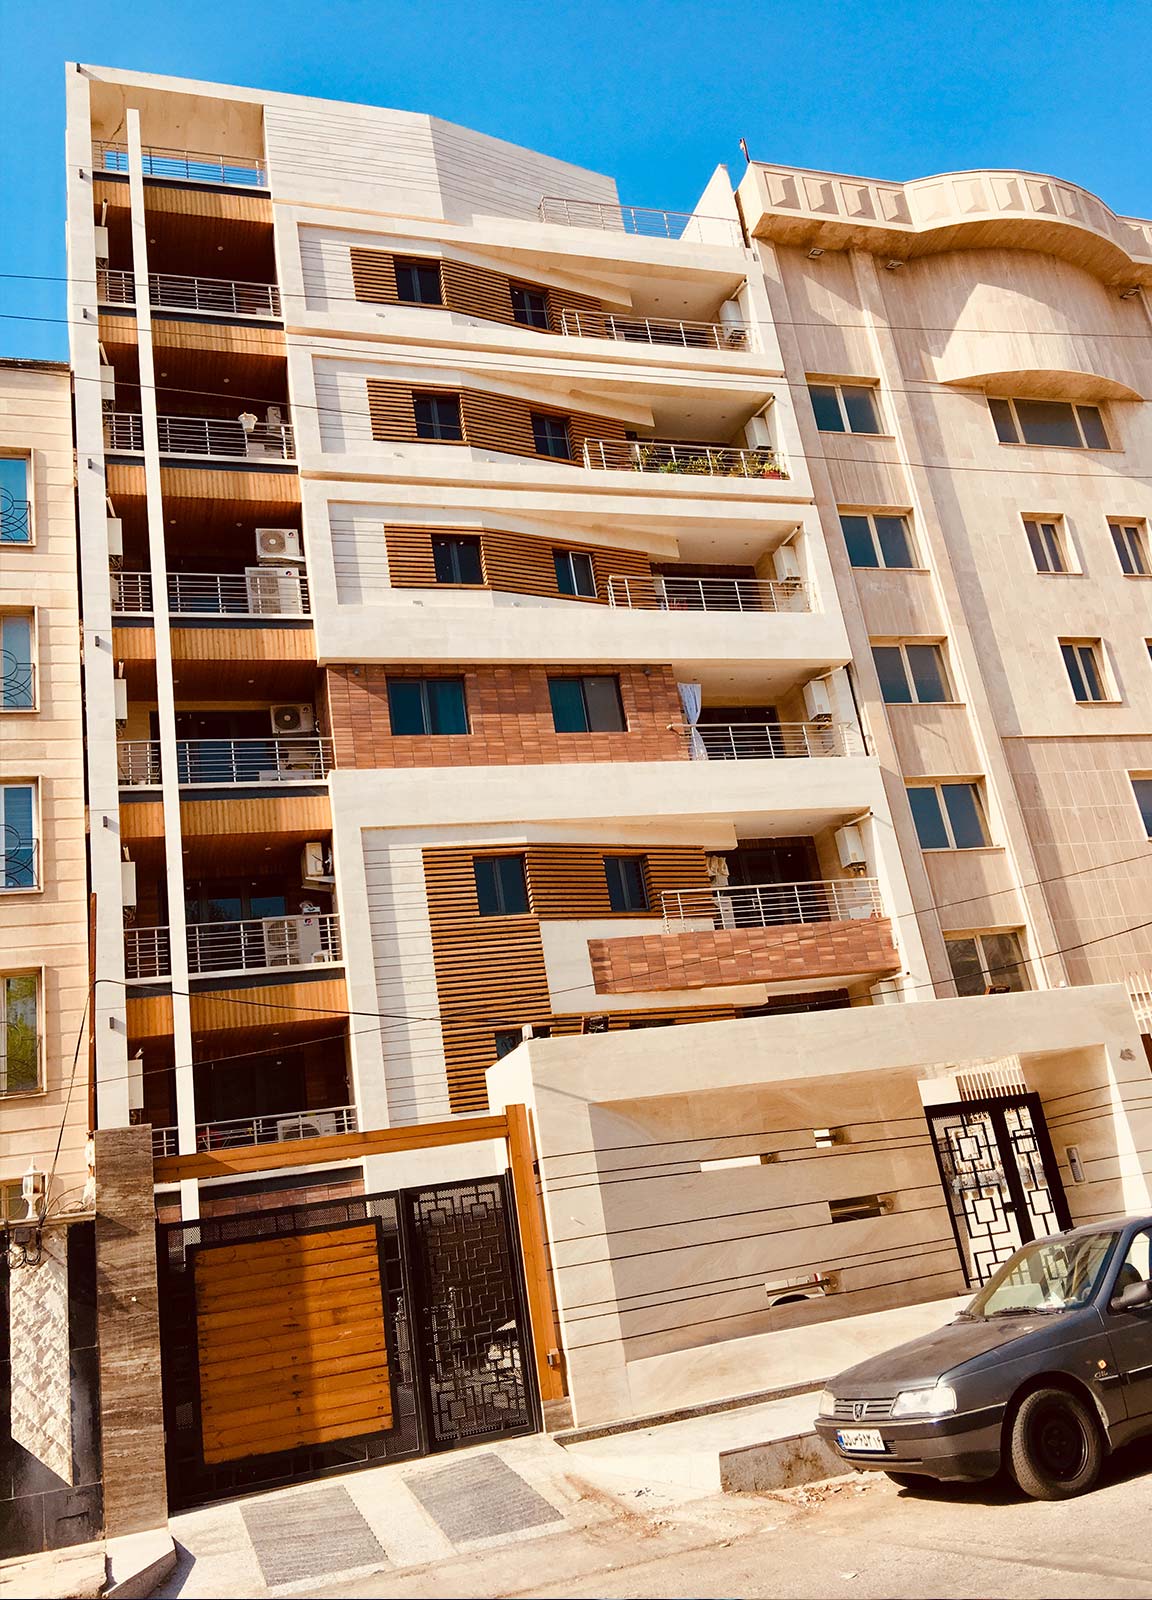 طراحی و اجرای ساختمان مسکونی ارگ خیابان دوم کیانپارس اهواز توسط گروه معماری معتمد و همکاران